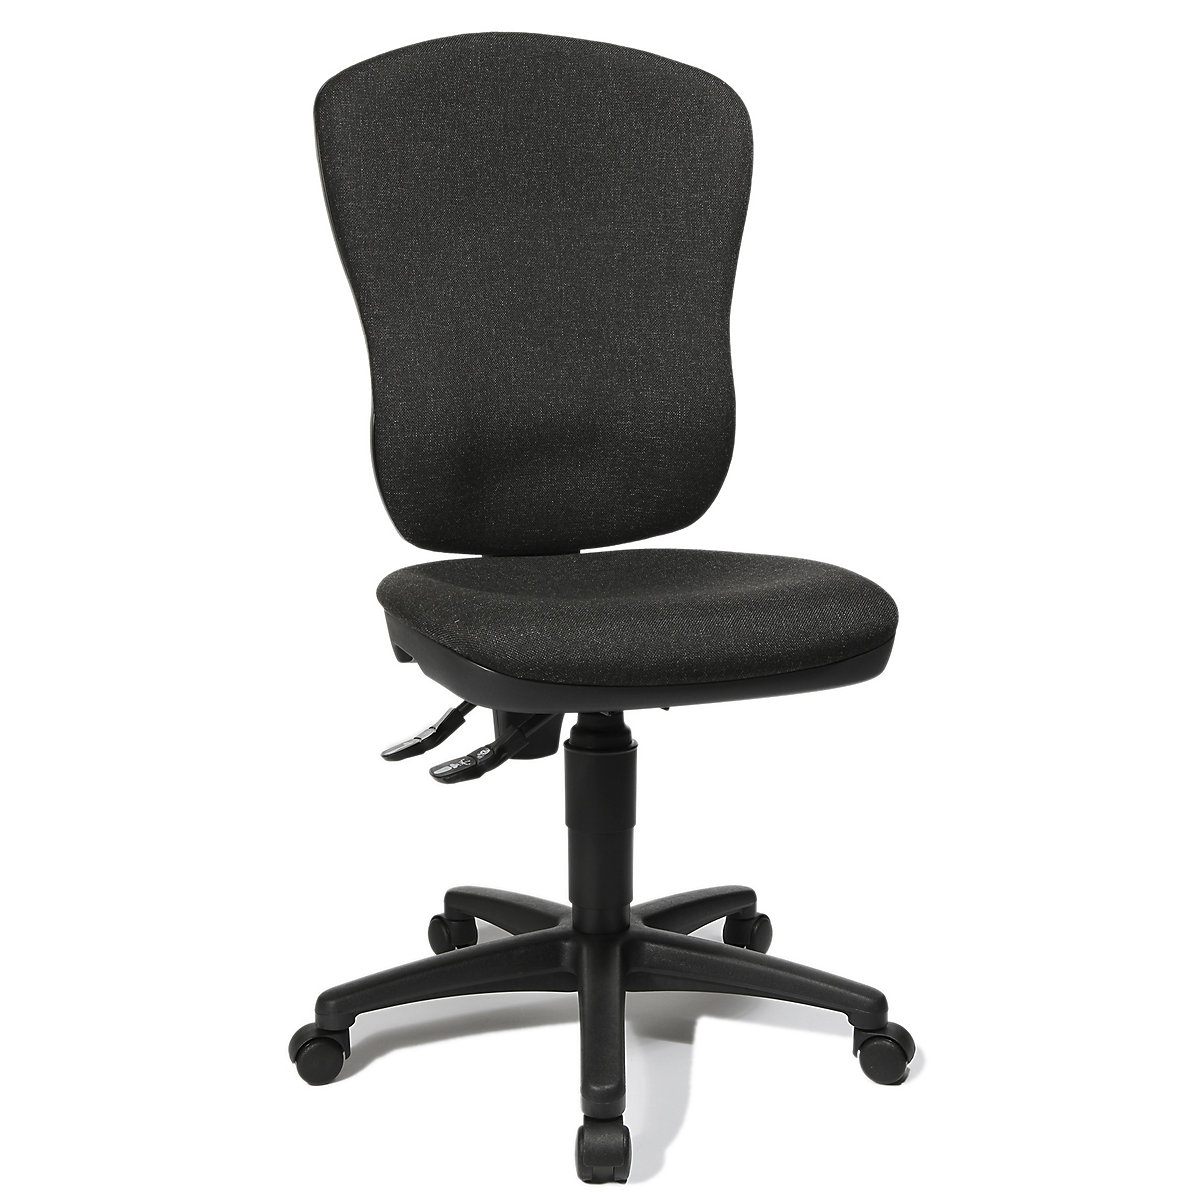 Standardní otočná židle – Topstar, bez područek, s opěrou bederních obratlů, výška opěradla 570 mm, potah antracitový-5